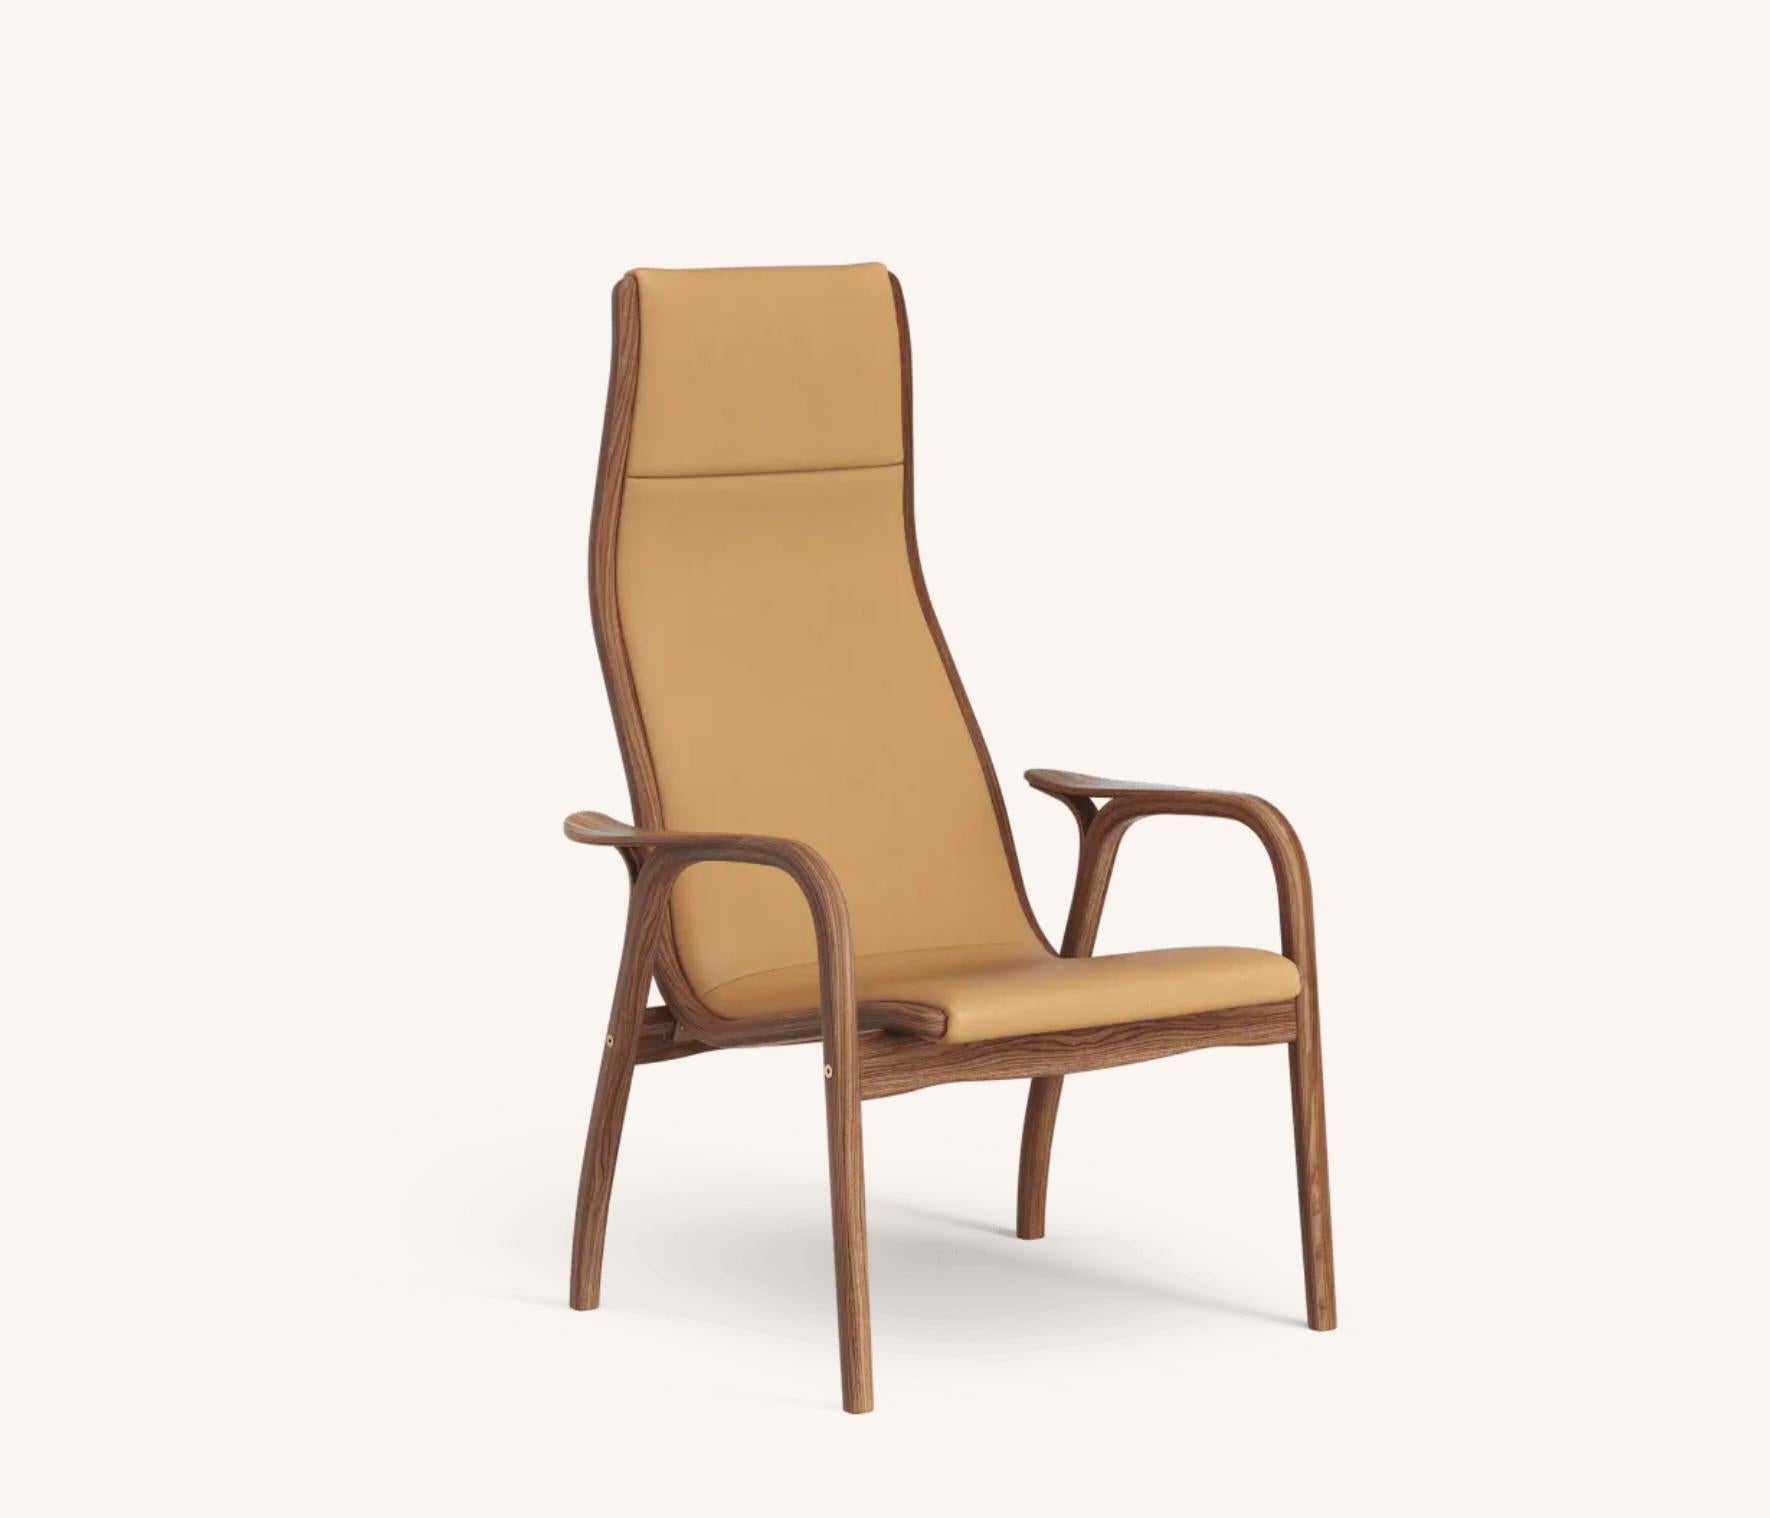 Yngve Ekström Lamino Easy Chair de Swedese en noyer et cuir cognac 'Elmo Baltique 43001'. Nouveau, design de 1956.

Le Lamino d'Yngve Ekström est l'un des fauteuils scandinaves les plus emblématiques. Conçue en 1956, cette chaise ne s'est jamais